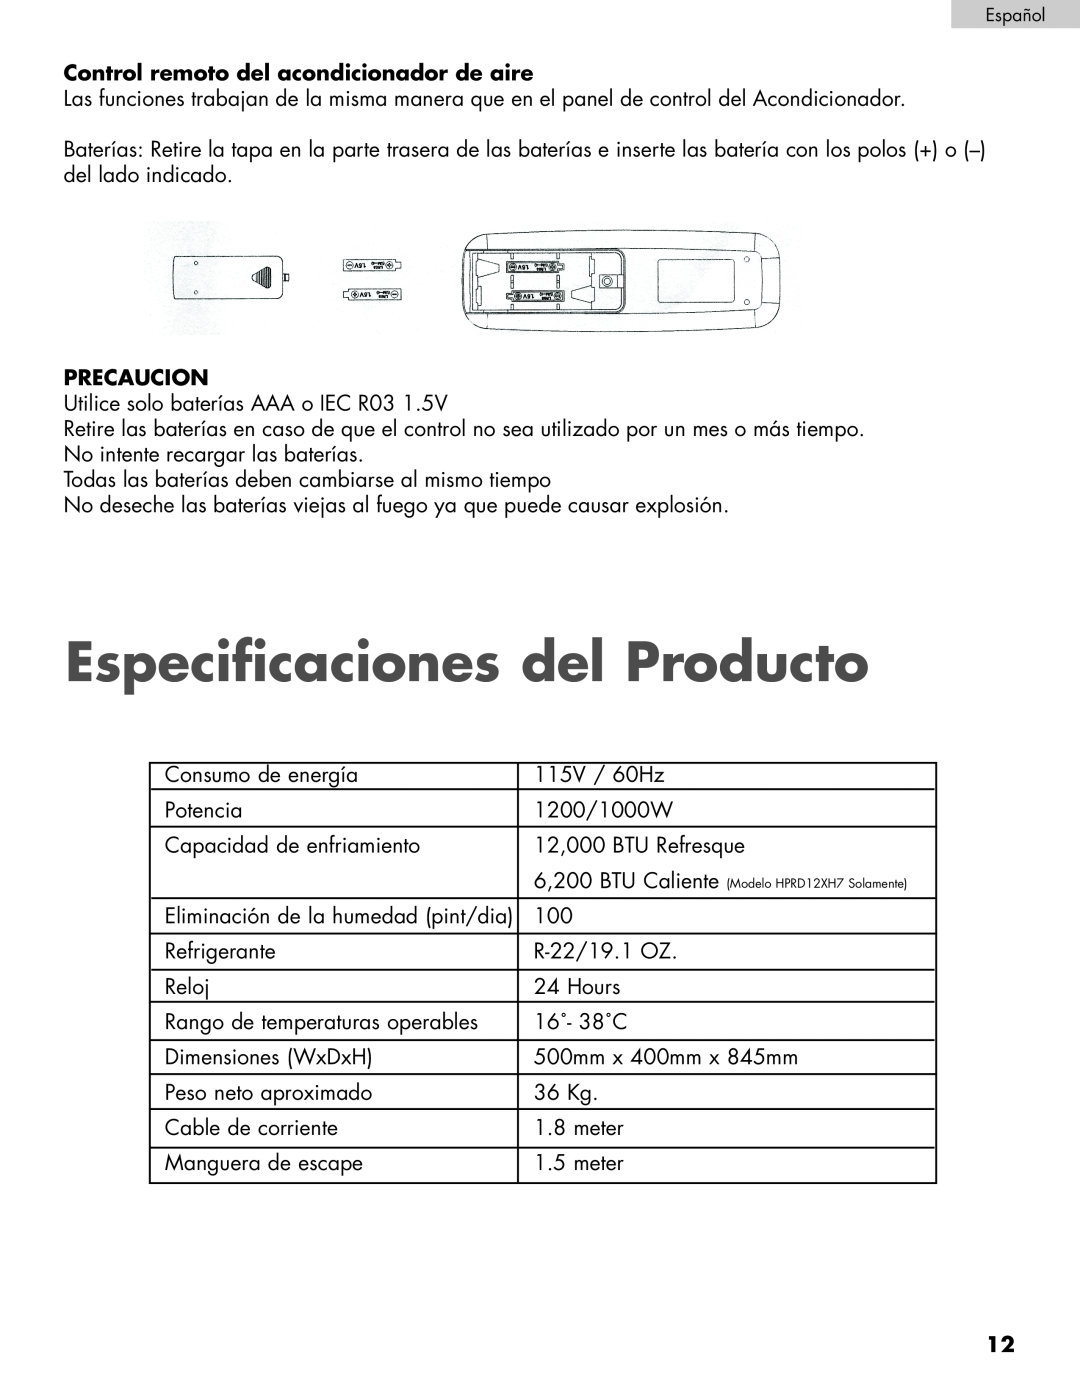 Haier HPRD12XC7, HPRD12XH7 user manual Especificaciones del Producto, Control remoto del acondicionador de aire, Precaucion 